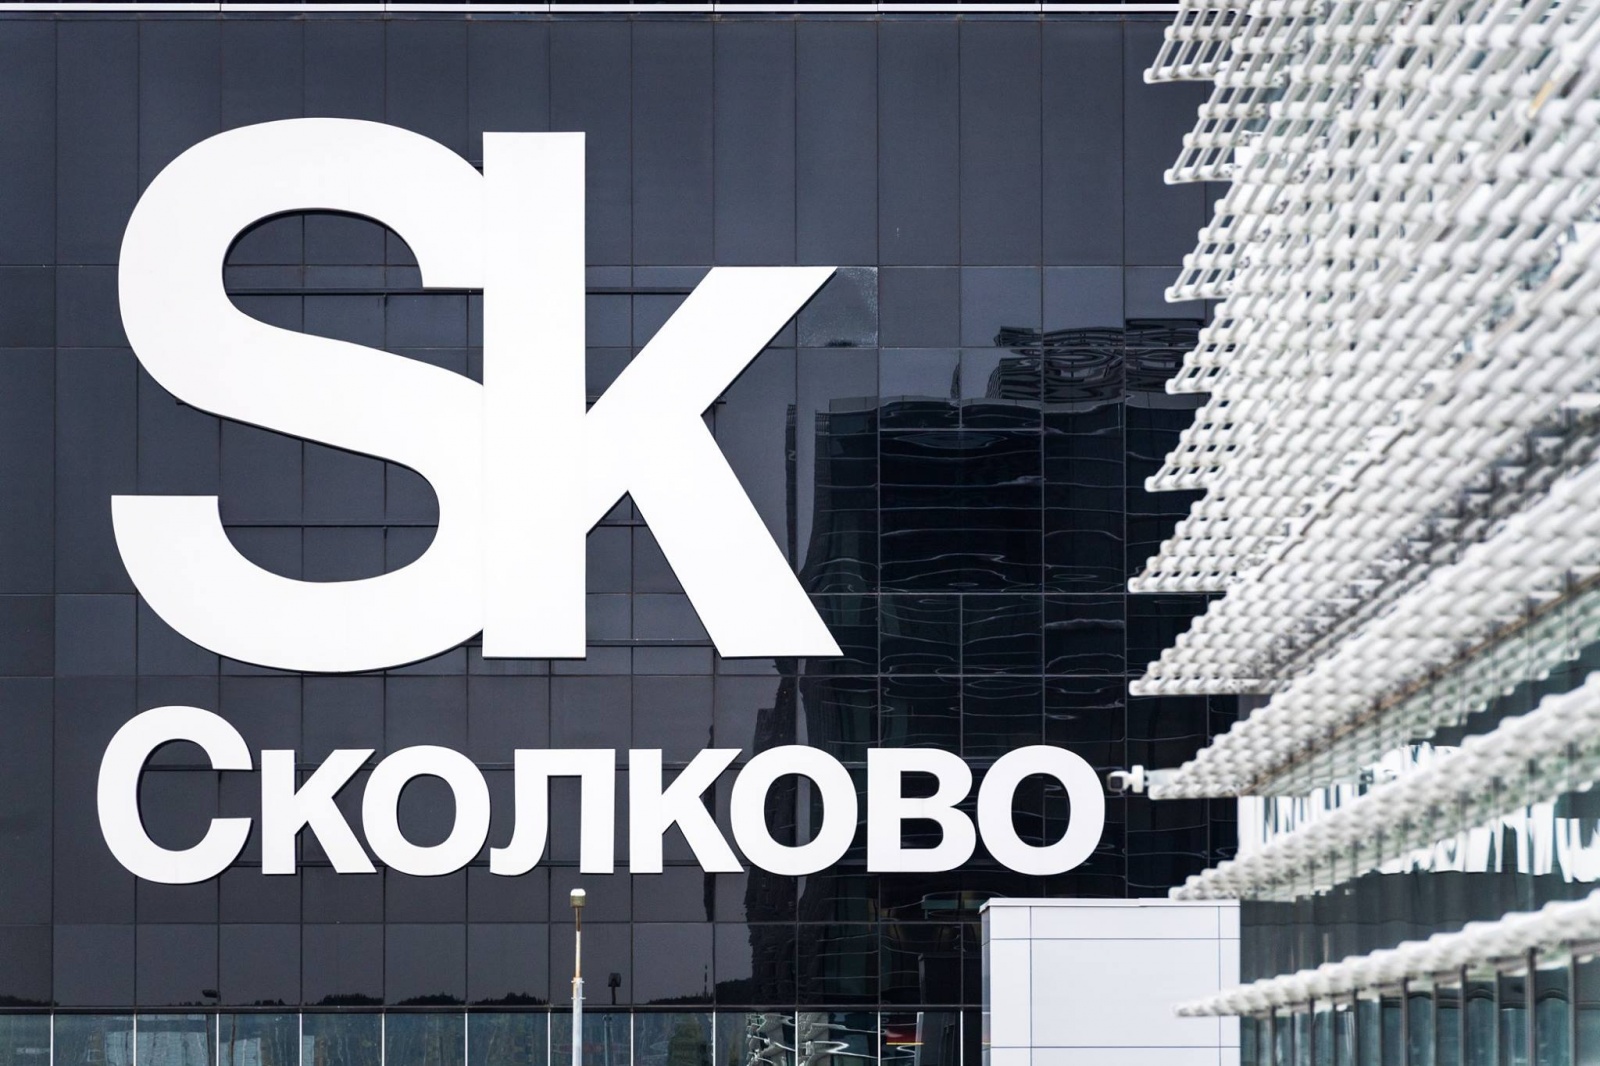 Ежегодное мероприятие Фонда «Сколково», Стартап-тур, пройдет 31 марта в Иркутске